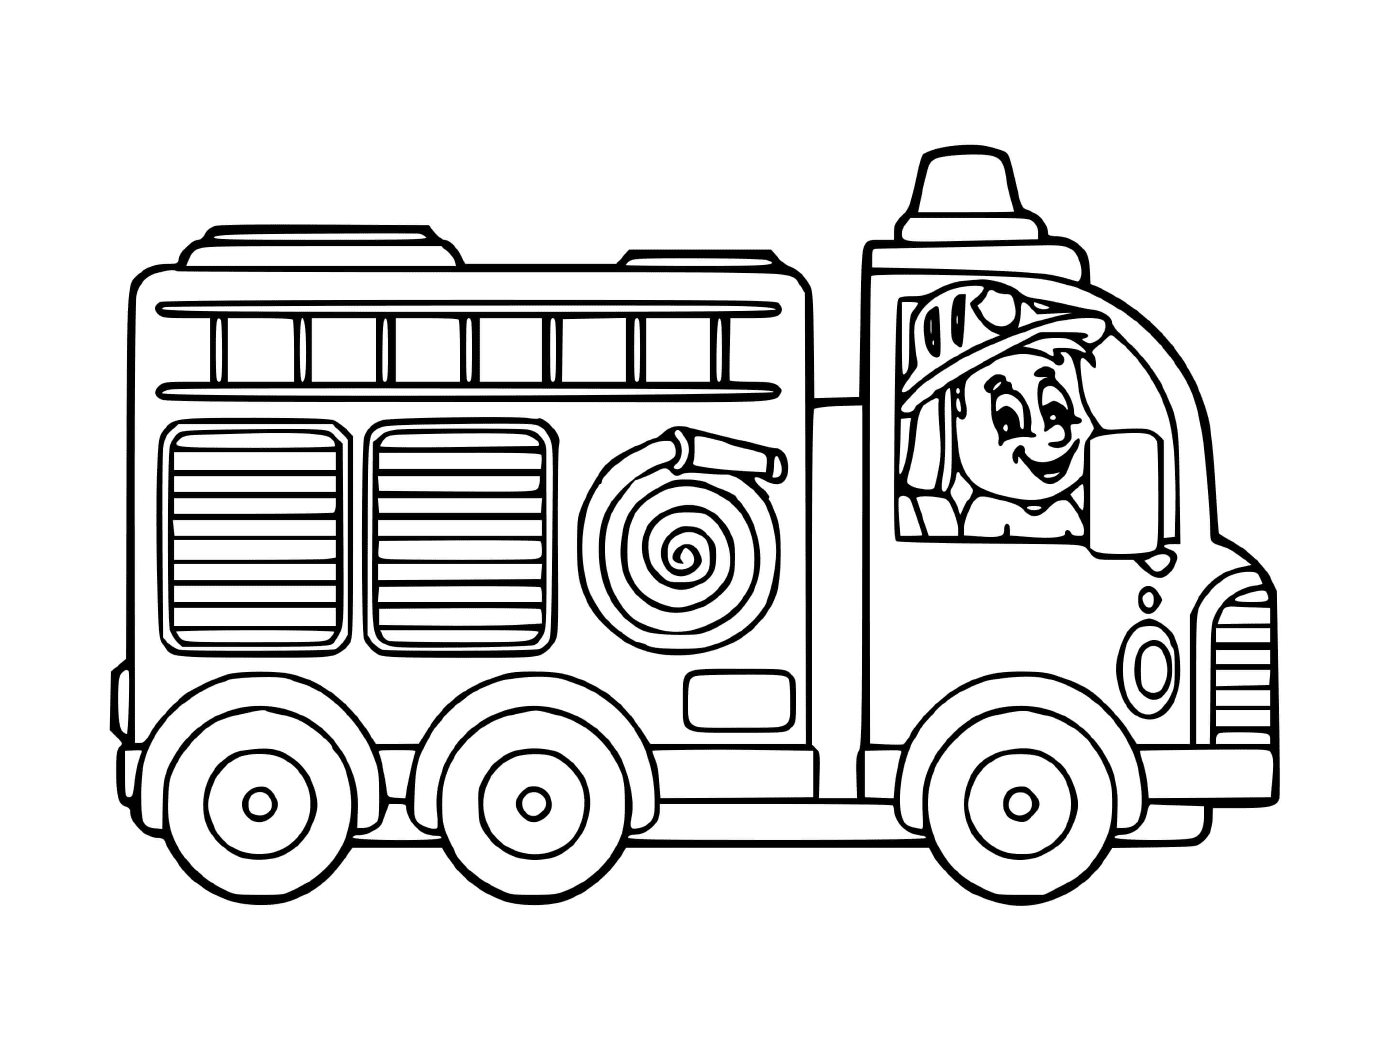  Un camion dei pompieri per l'asilo 